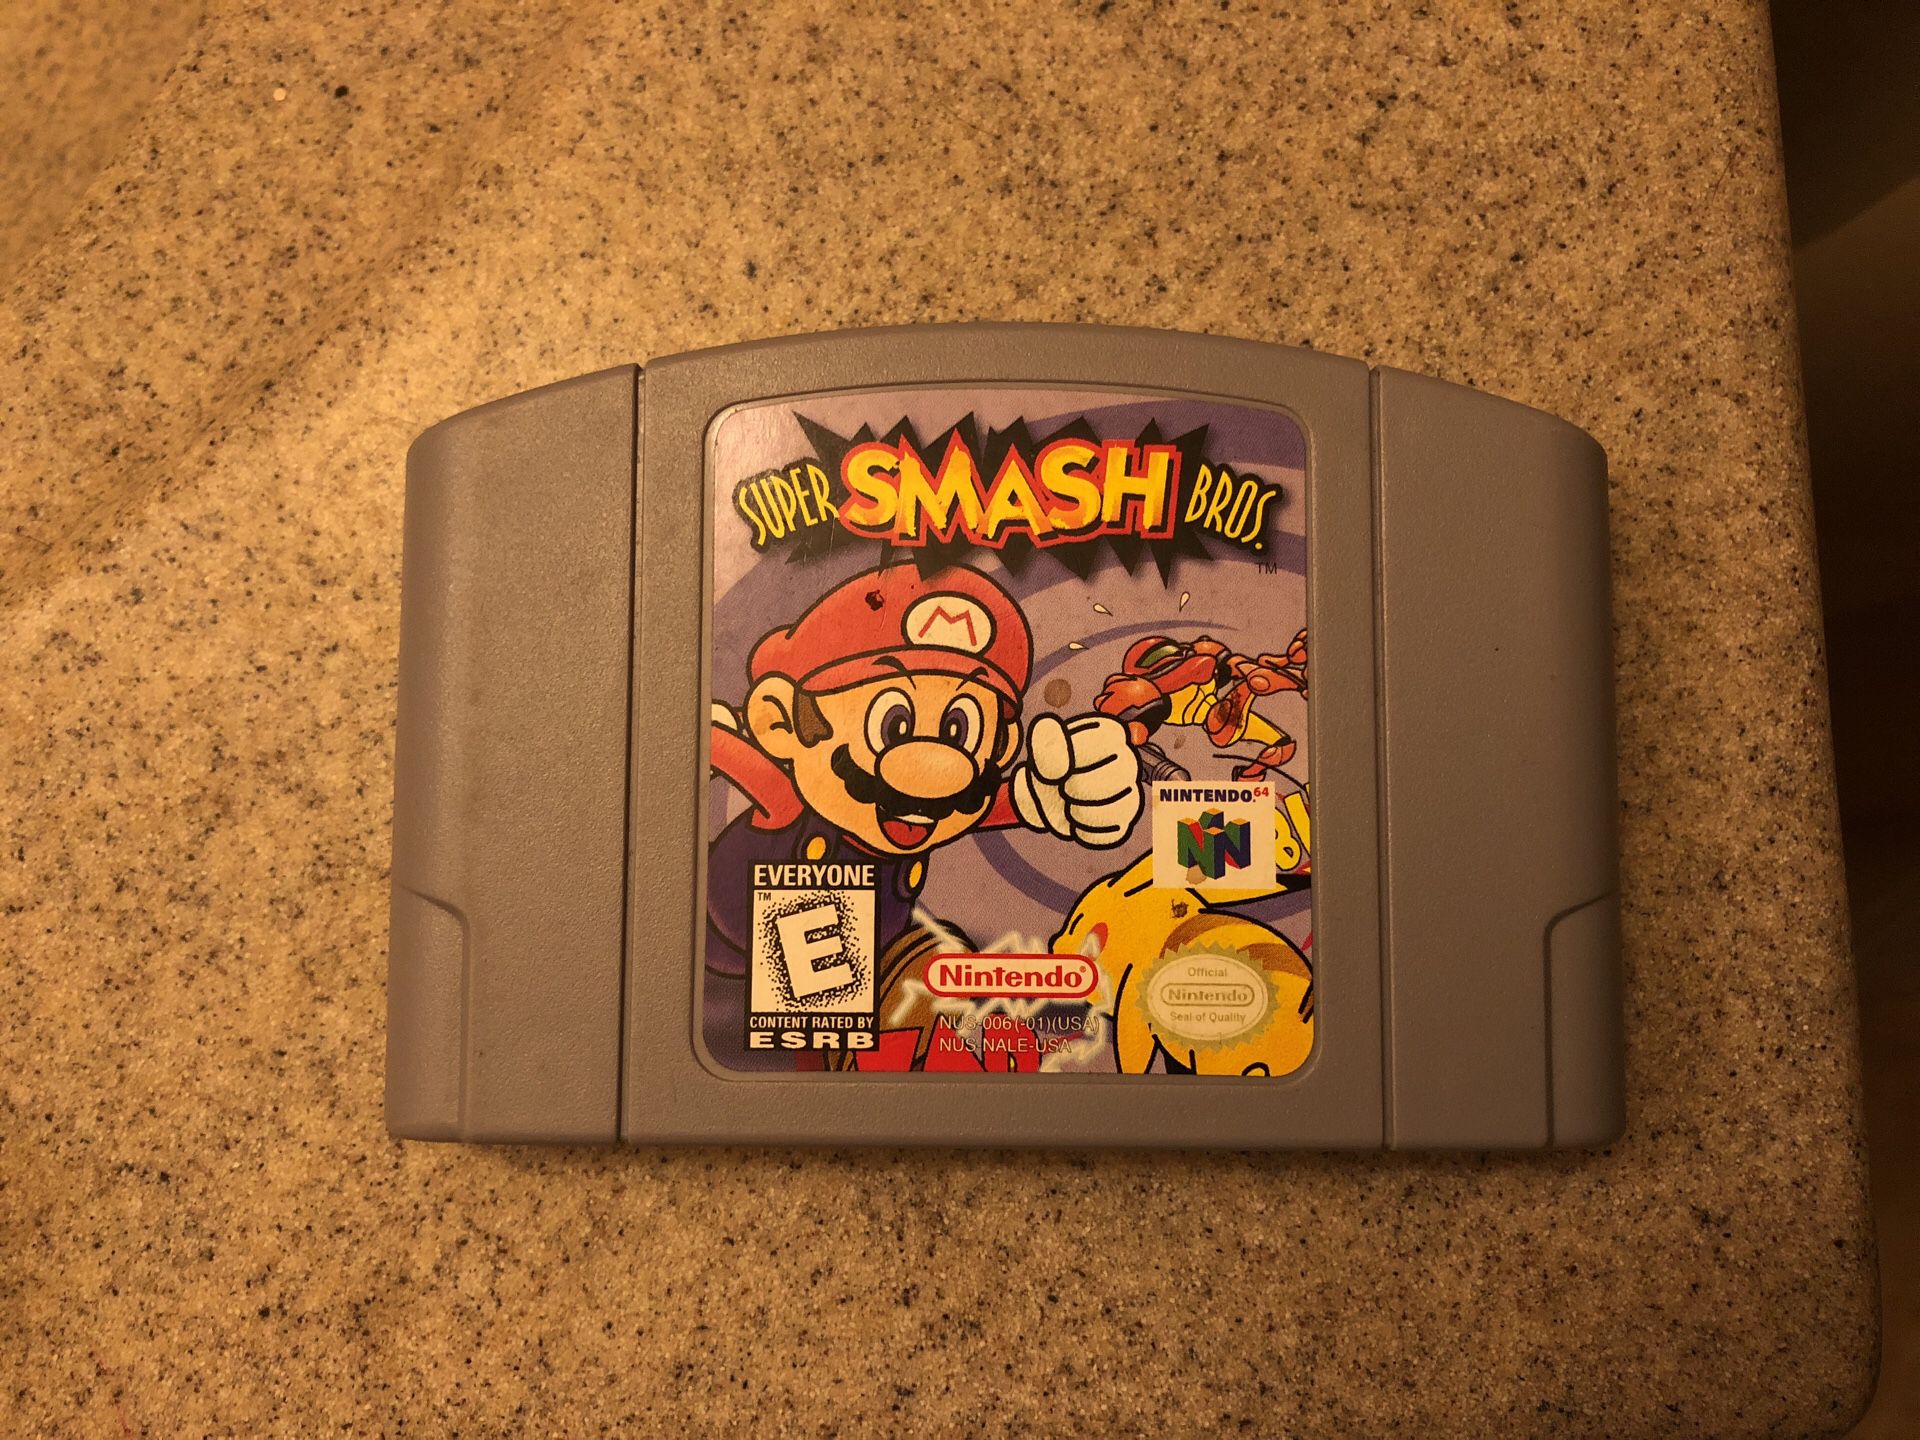 Actual Super Smash Bros Nintendo 64